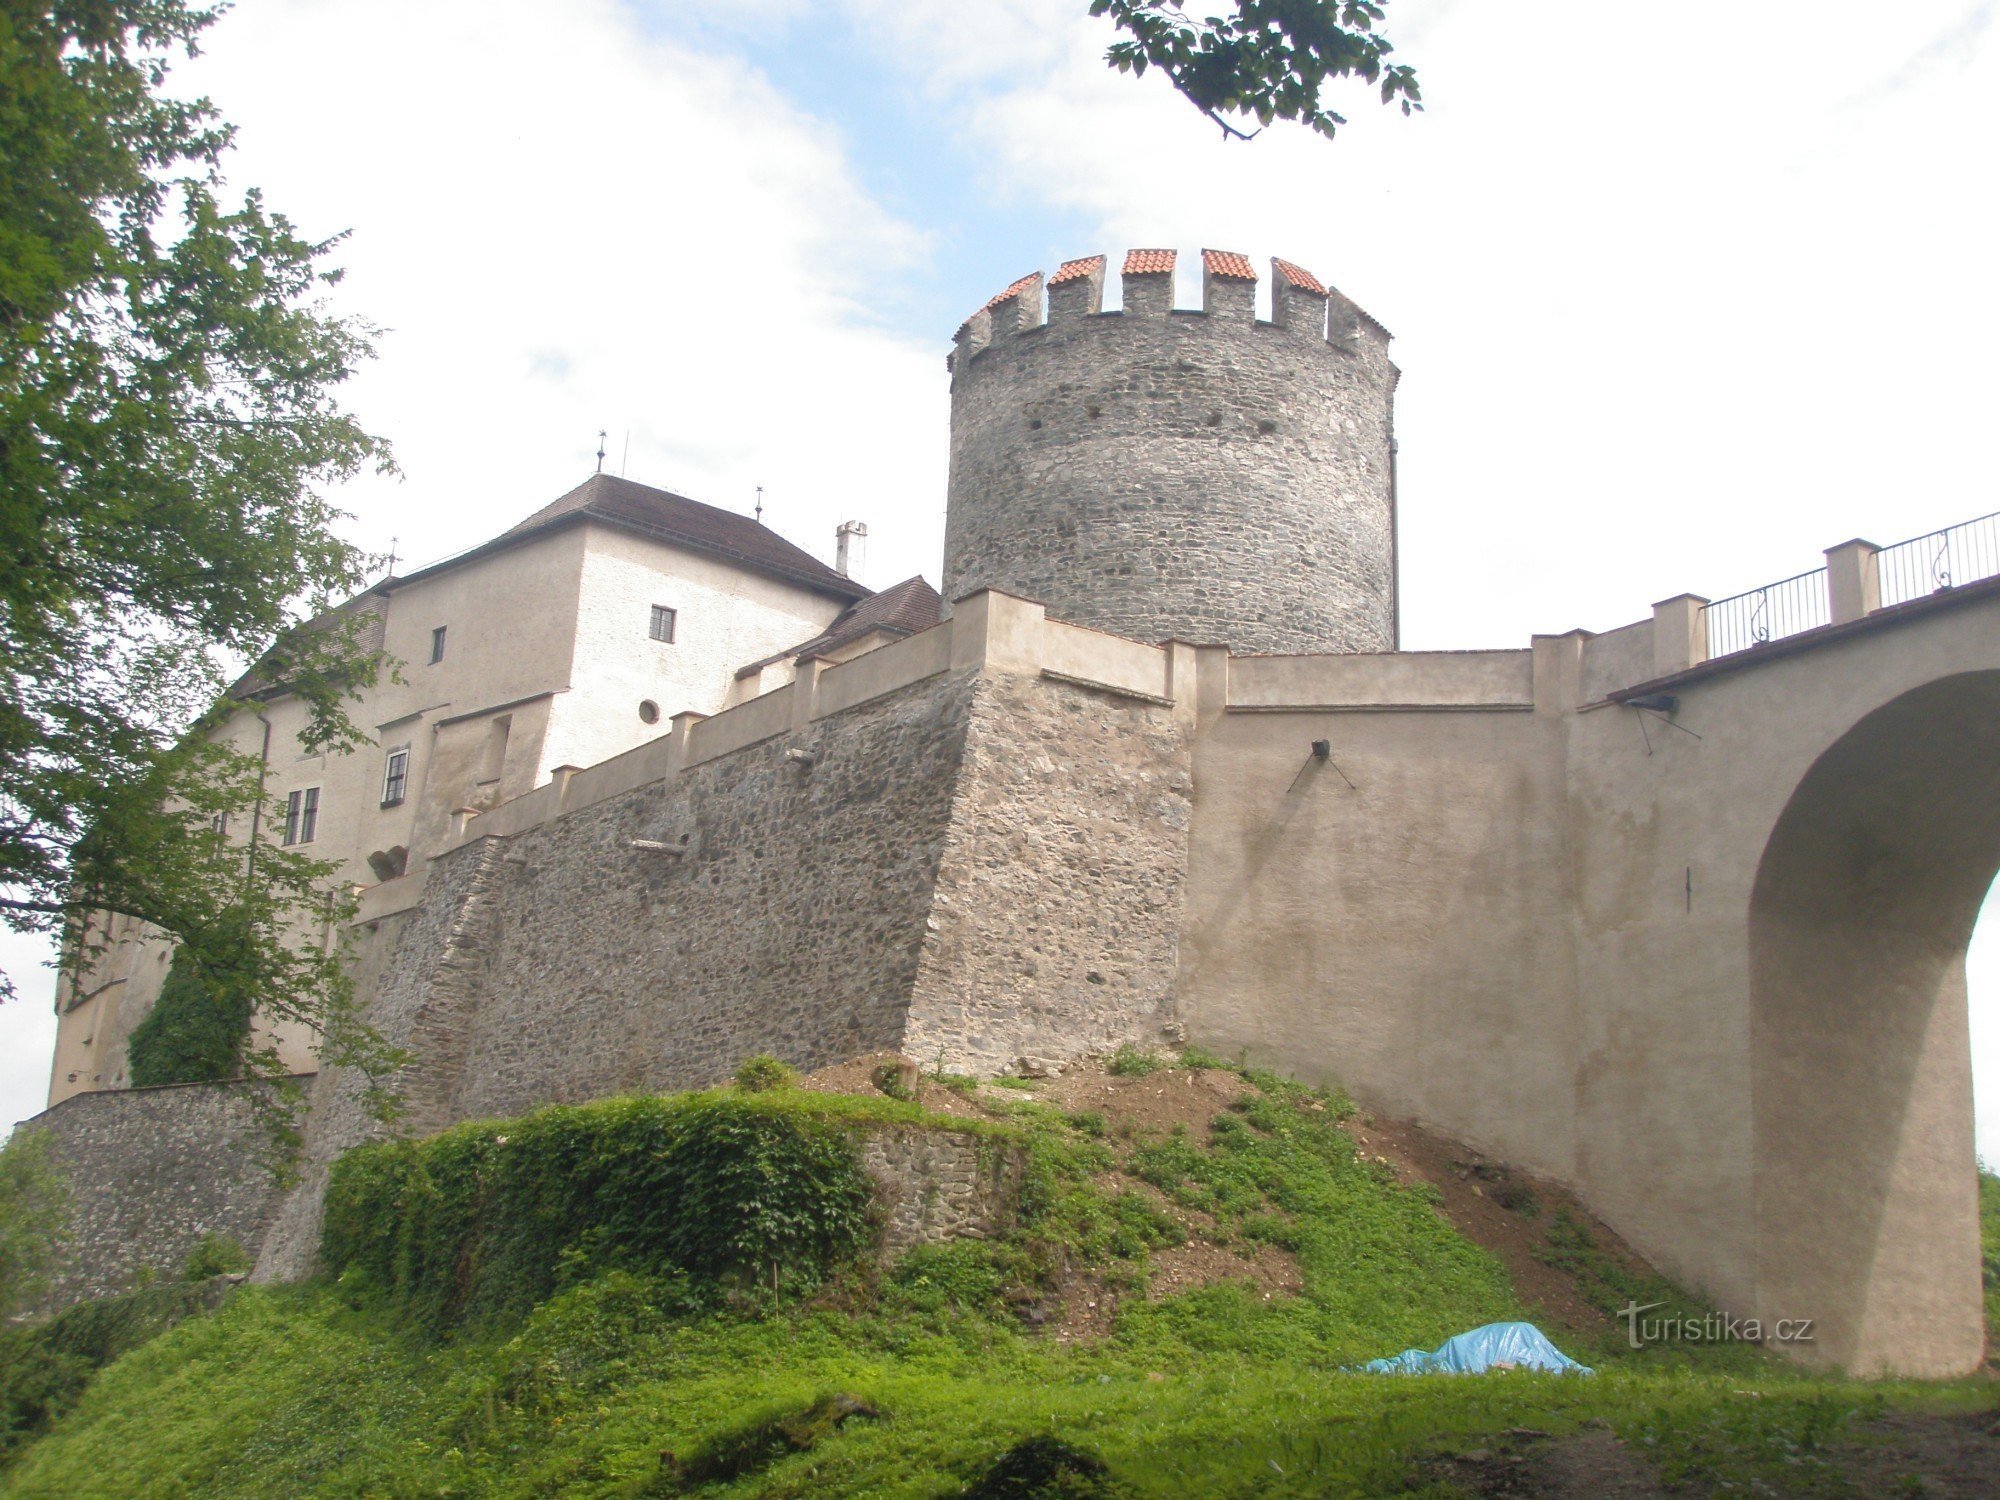 Castle Tschechische Šternberk